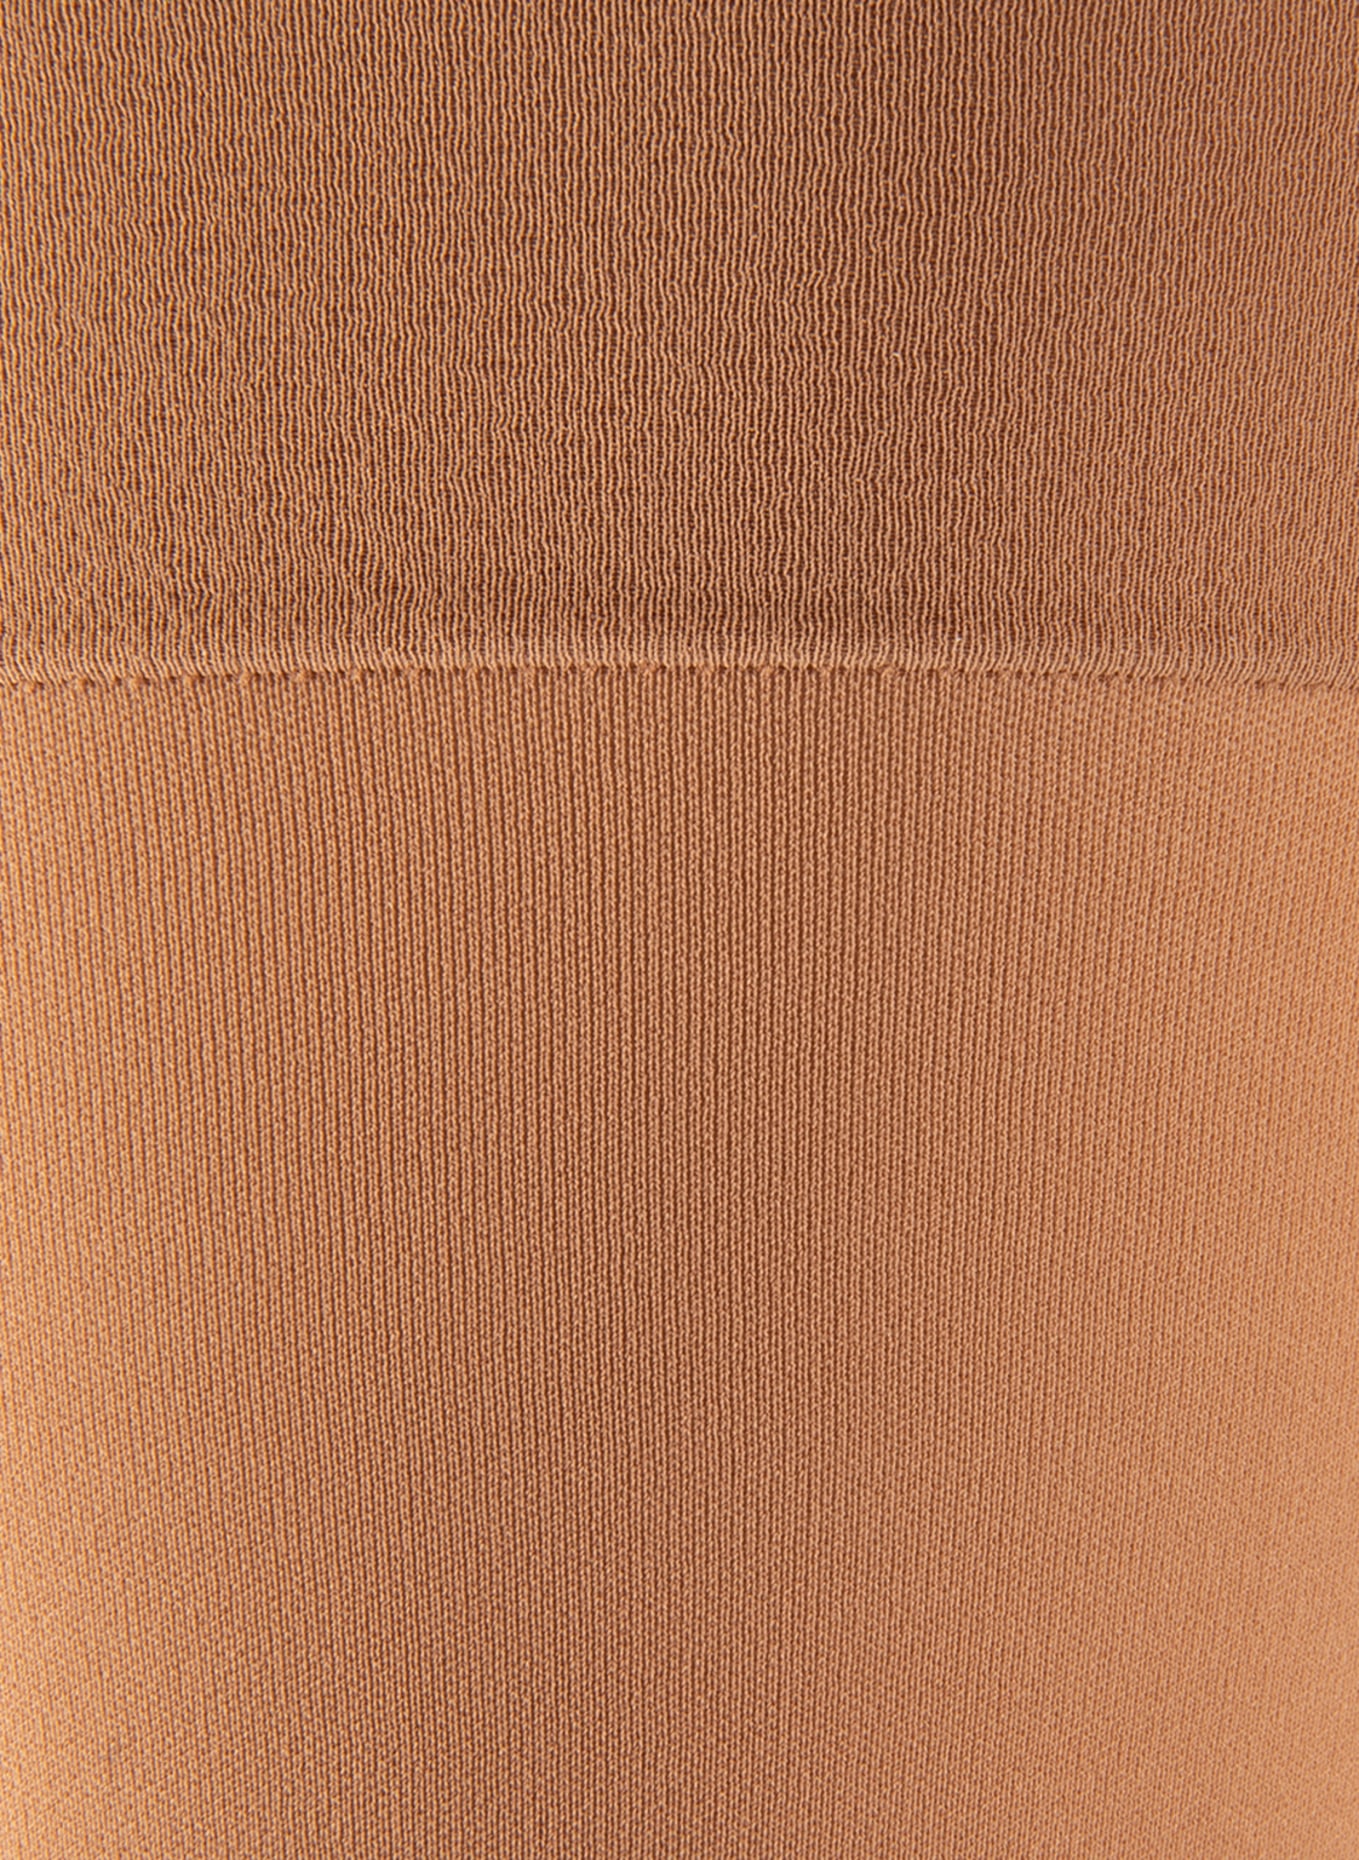 ITEM m6 Fine knee-high socks TRANSLUCENT, Color: 740 light beige (Image 2)